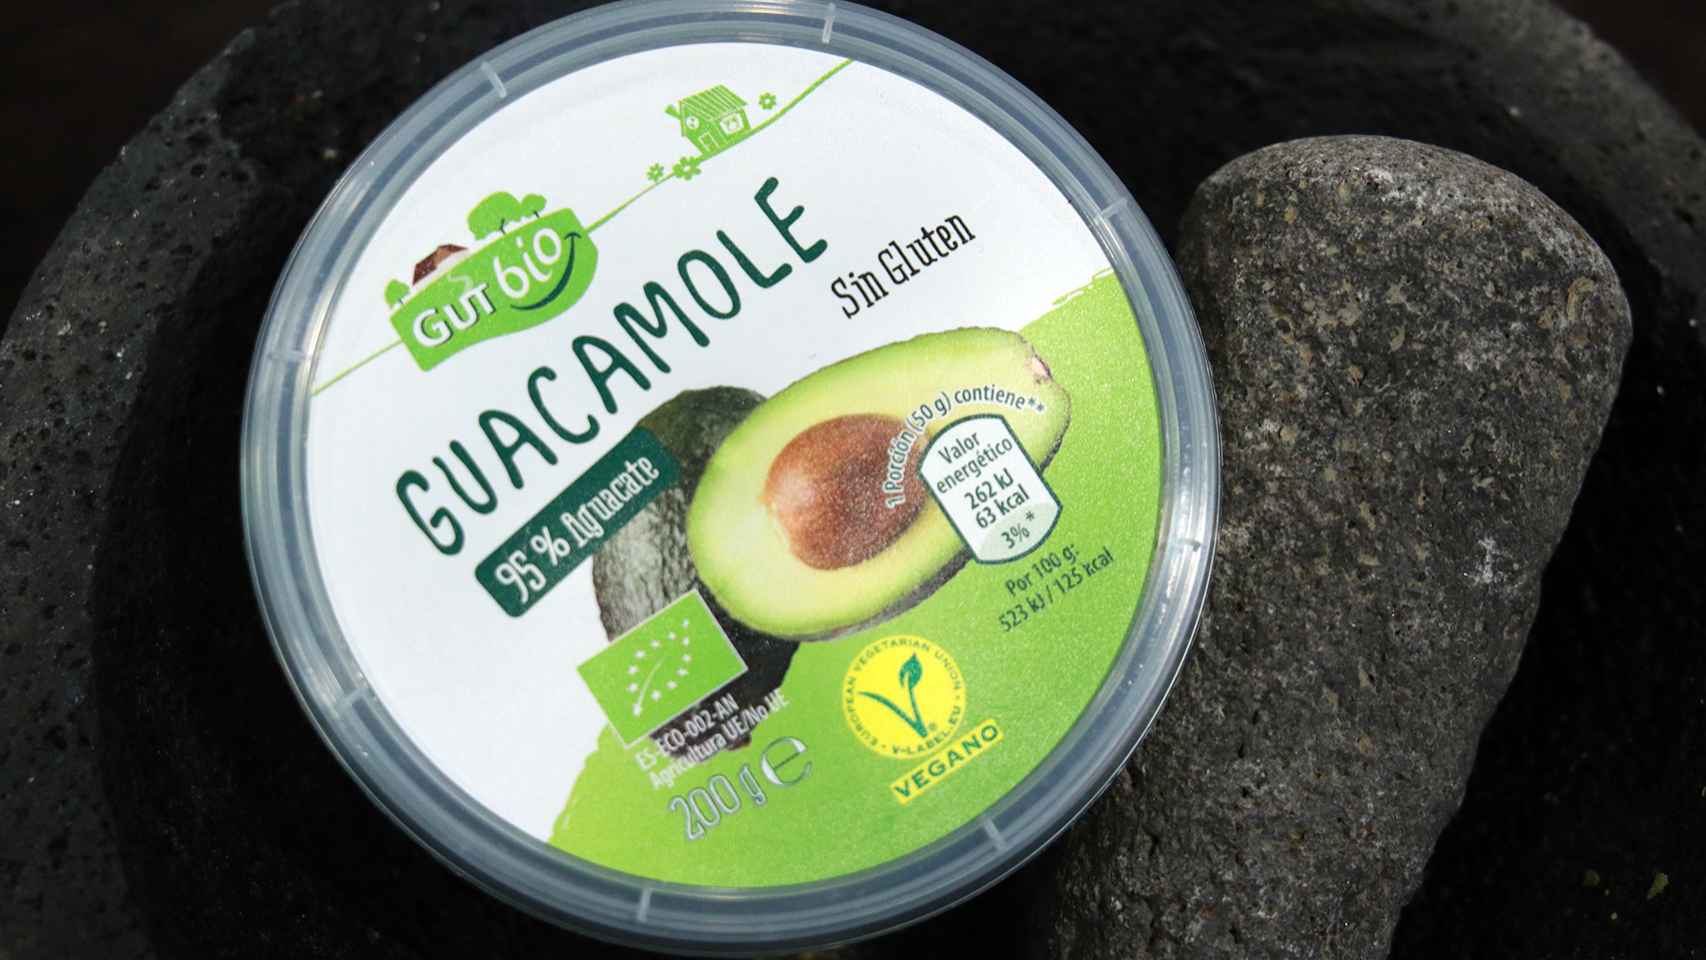 El bote de 250 gramos de guacamole de GutBio, la gama de productos ecológicos de Aldi.